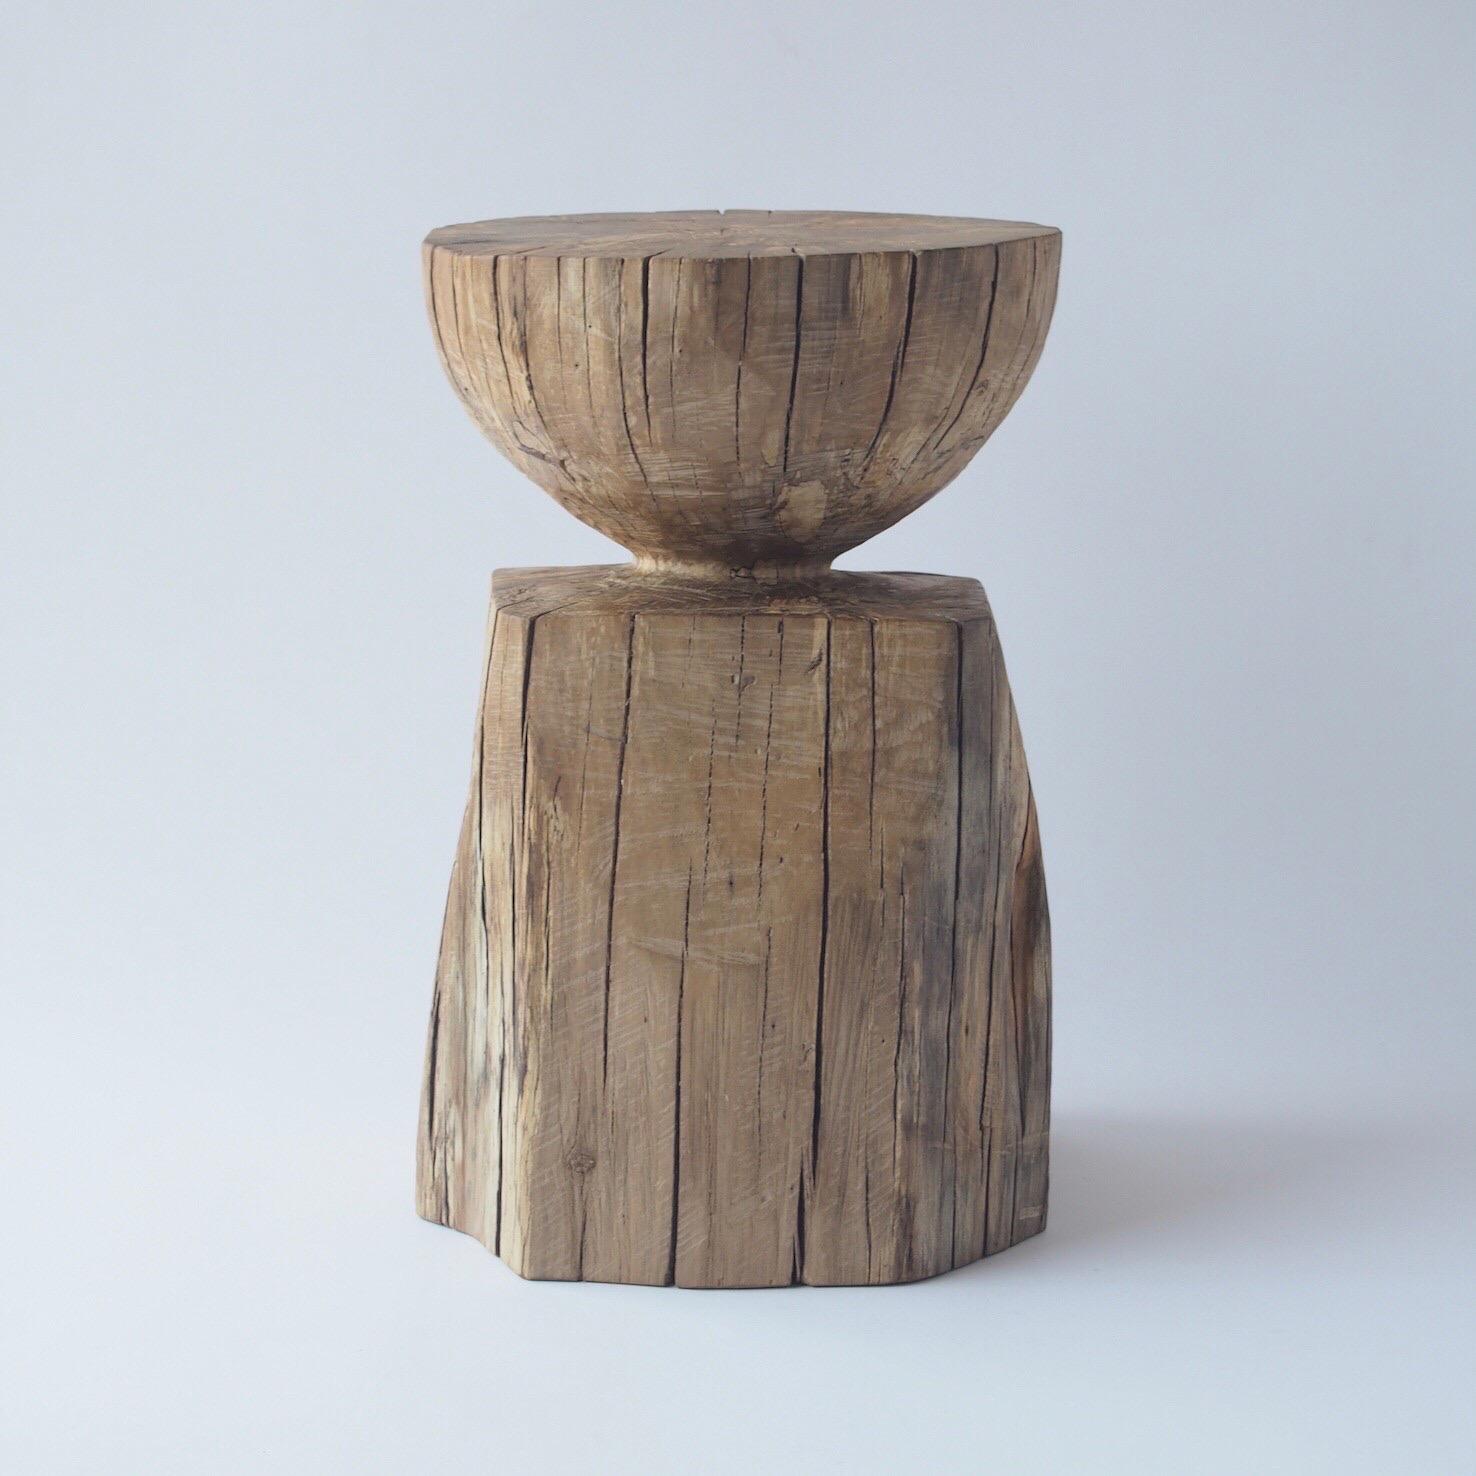 Nom : Garçon
Tabouret sculptural par les meubles sculptés Zogei
Matériau : Shiiki
Cette œuvre est taillée dans le bois avec des sortes de tronçonneuses.
La plupart des bois utilisés pour les œuvres de Nishimura ne peuvent servir à rien, ces bois